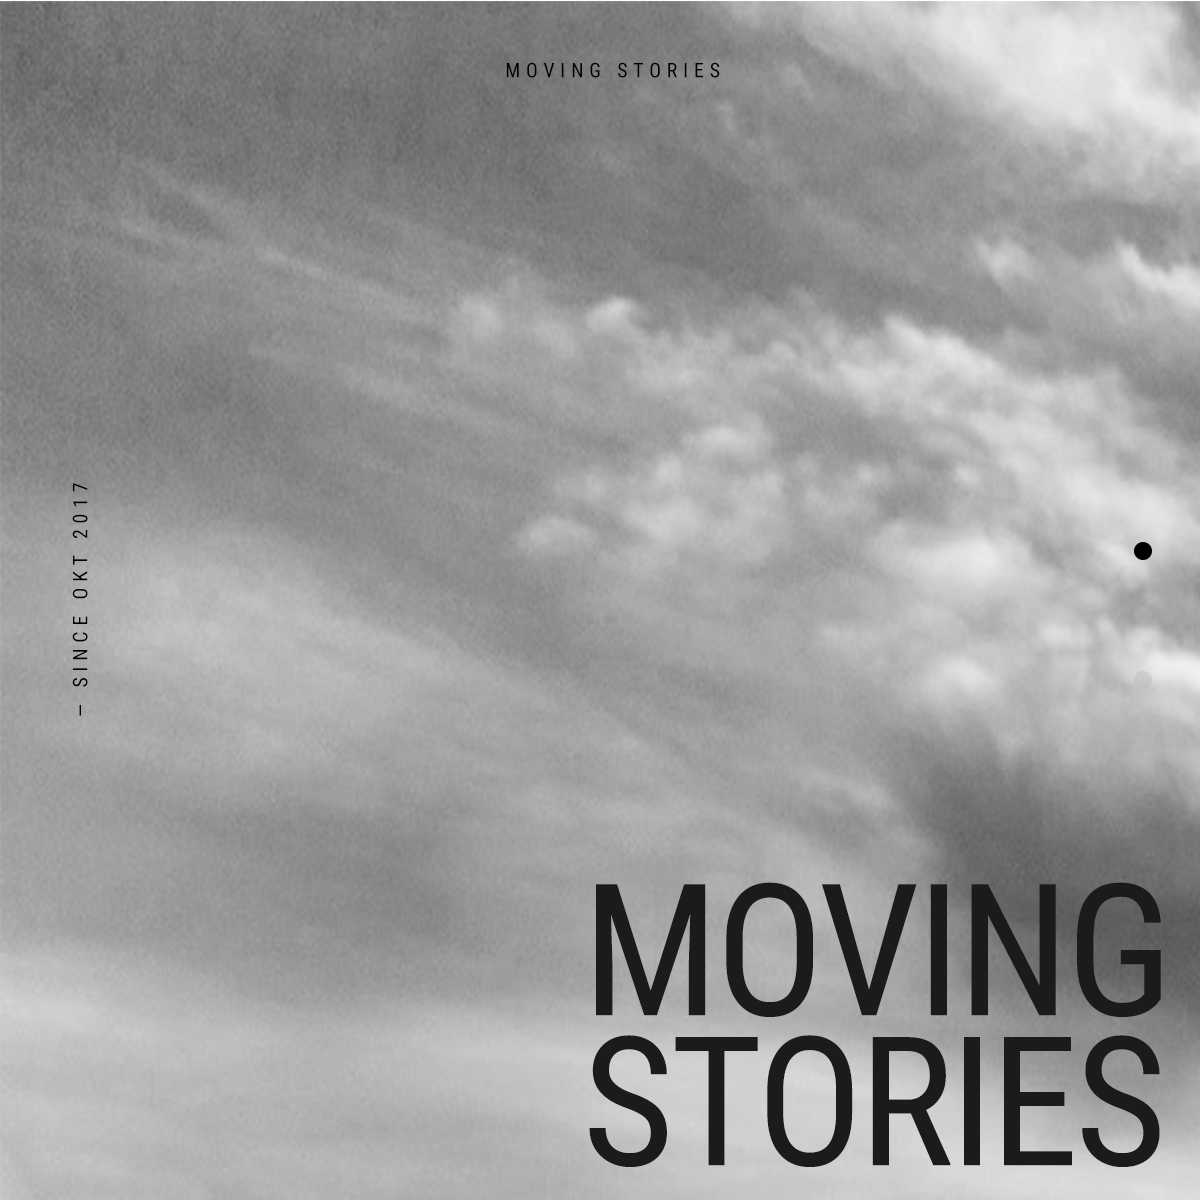 Moving Stories - Online platform